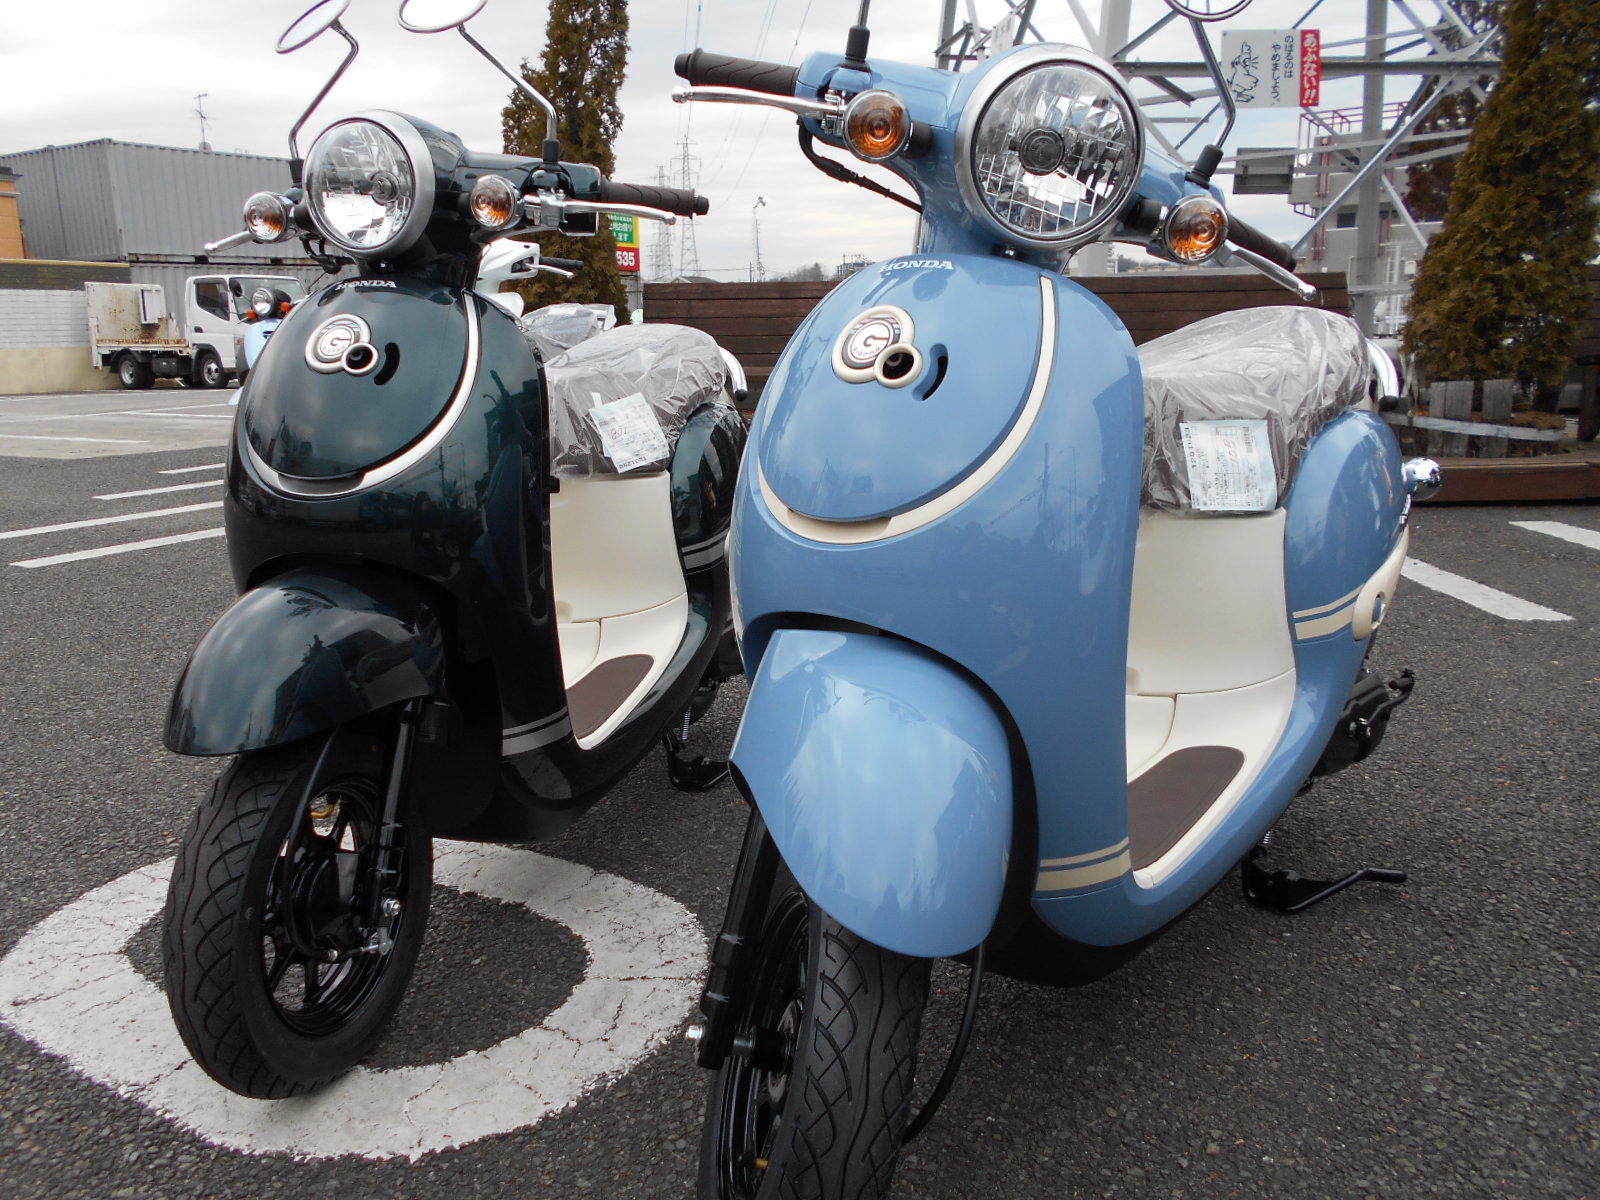 カワイイ新色カラー 最新情報 U Media ユーメディア 中古バイク 新車バイク探しの決定版 神奈川 東京でバイク 探すならユーメディア